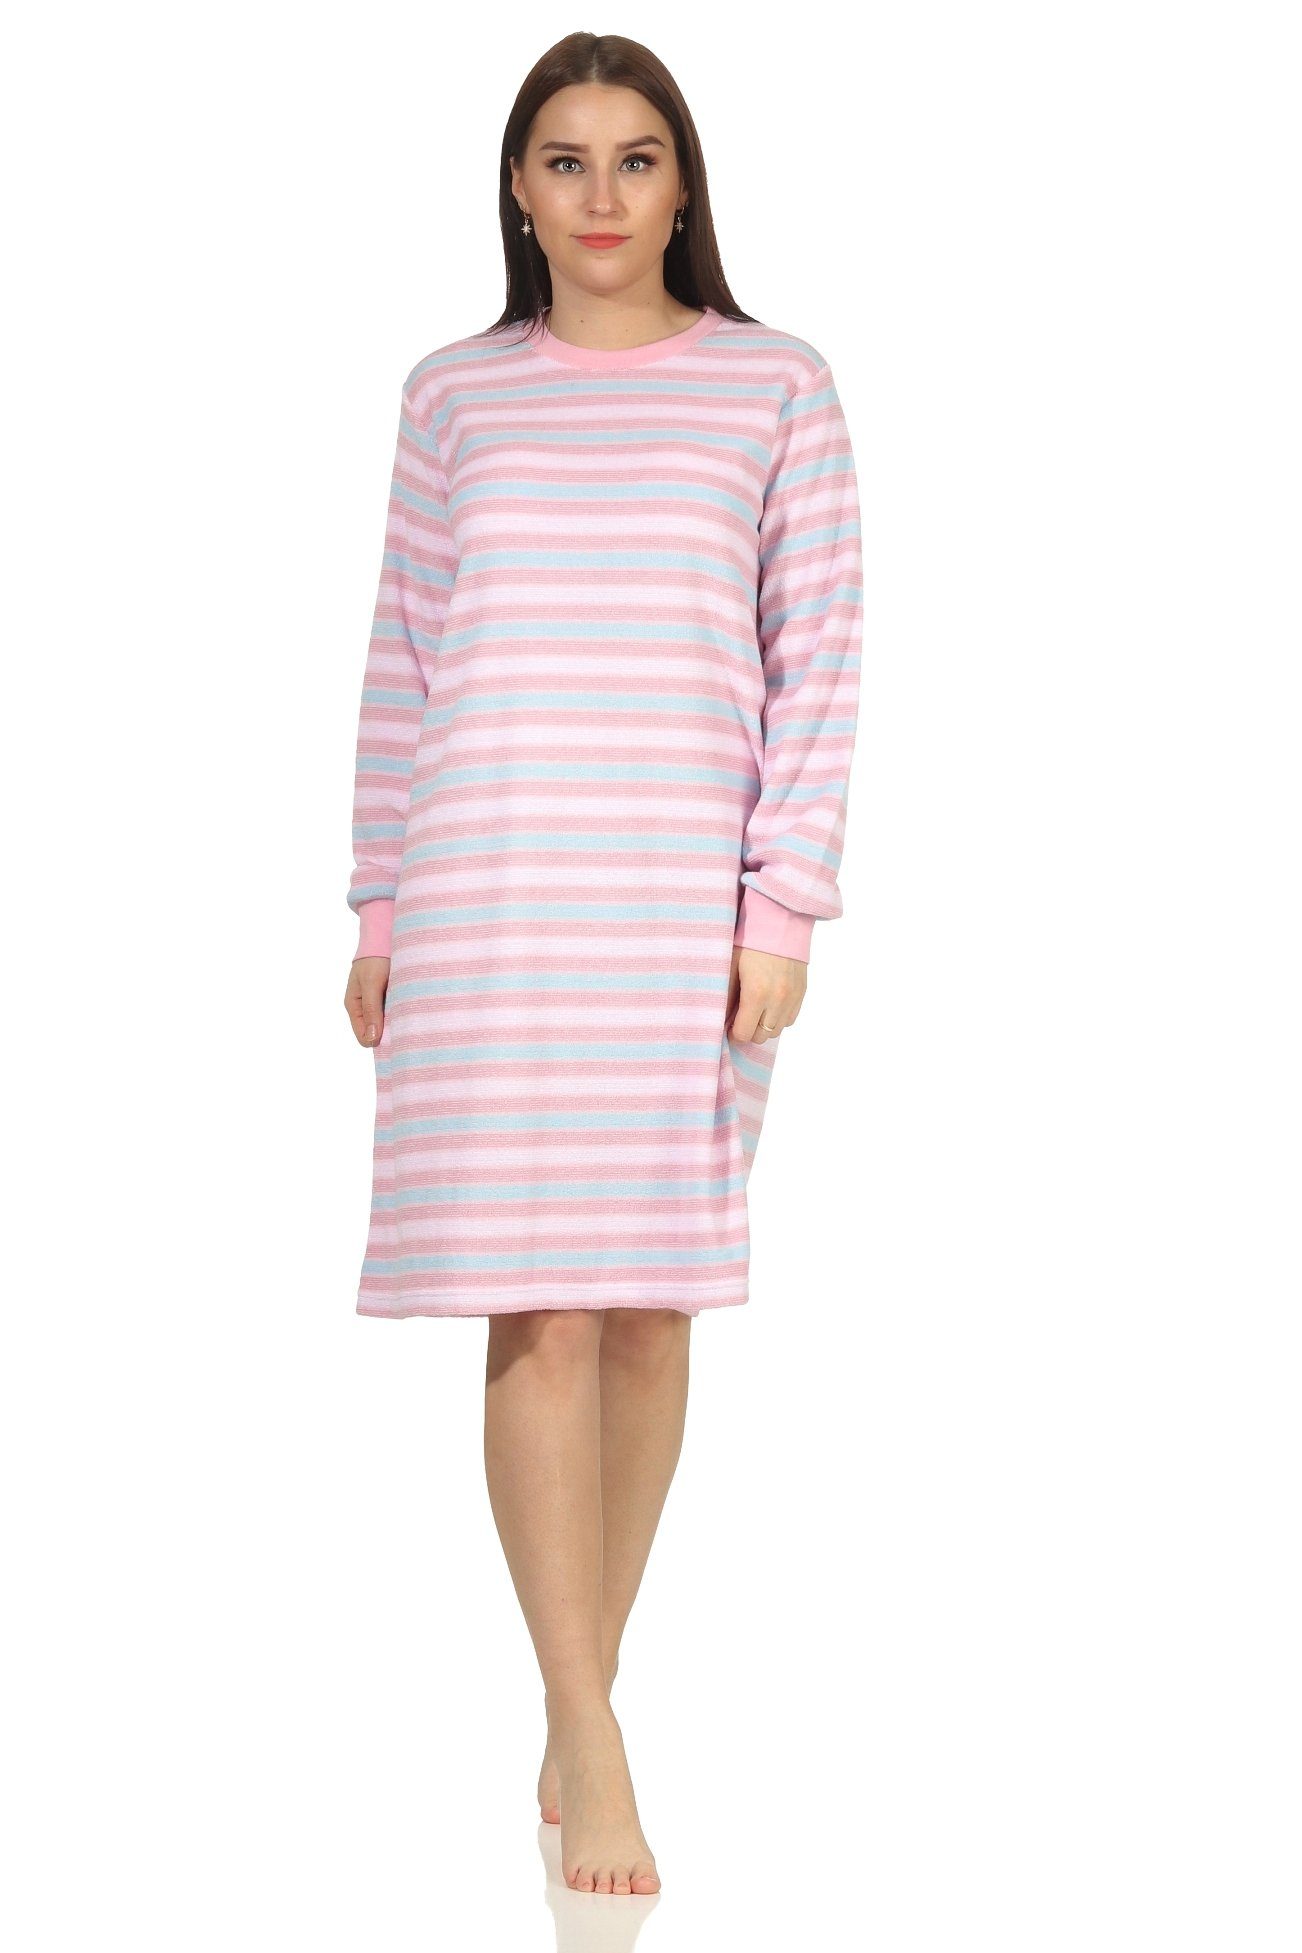 Creative by Normann Nachthemd Damen Frottee langarm Nachthemd mit Bündchen in Ringeloptik rosa